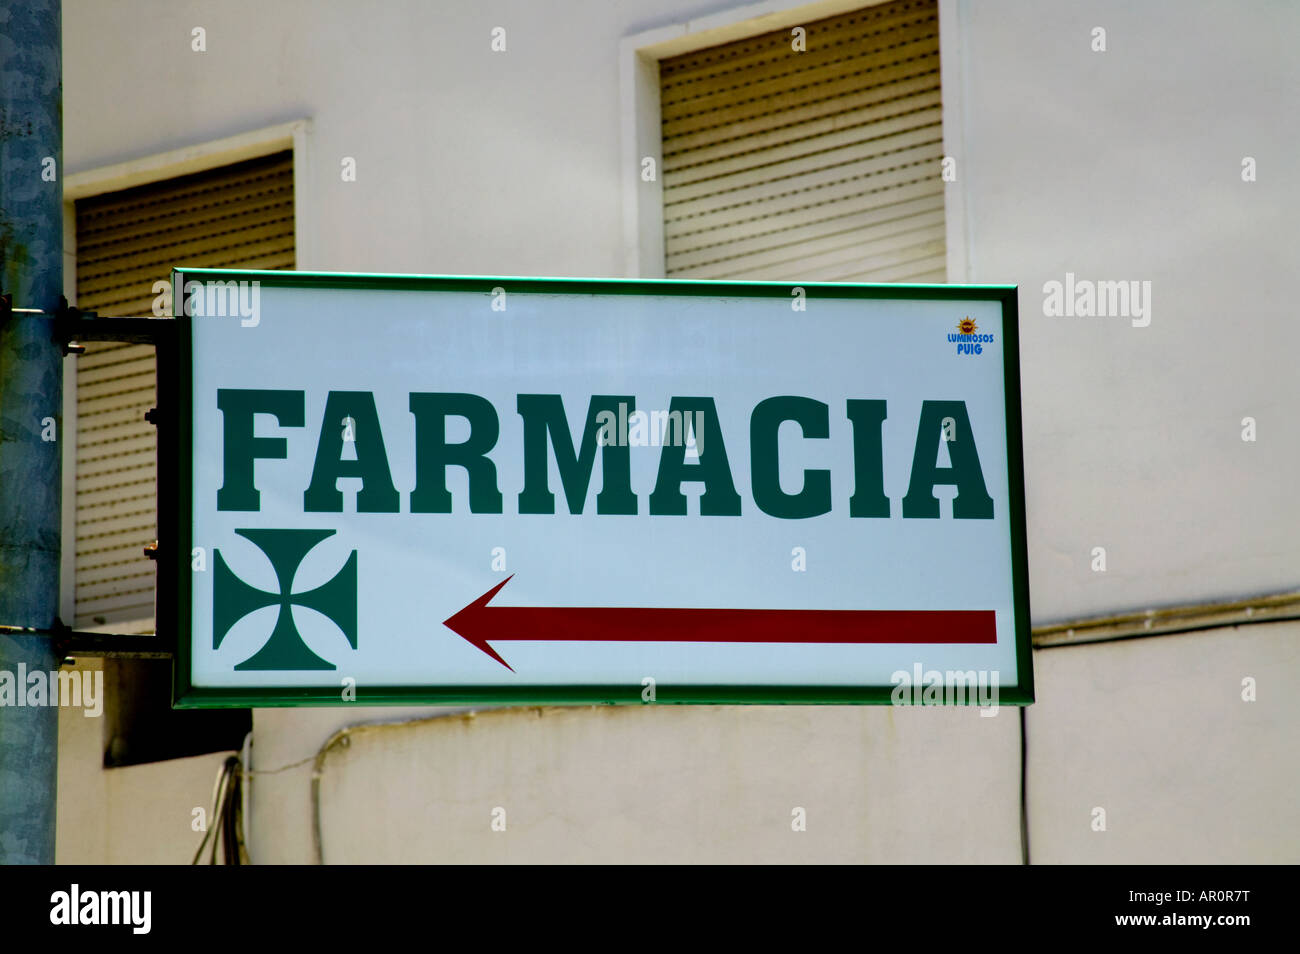 Signe pour Farmacia, Huelva Espagne Banque D'Images